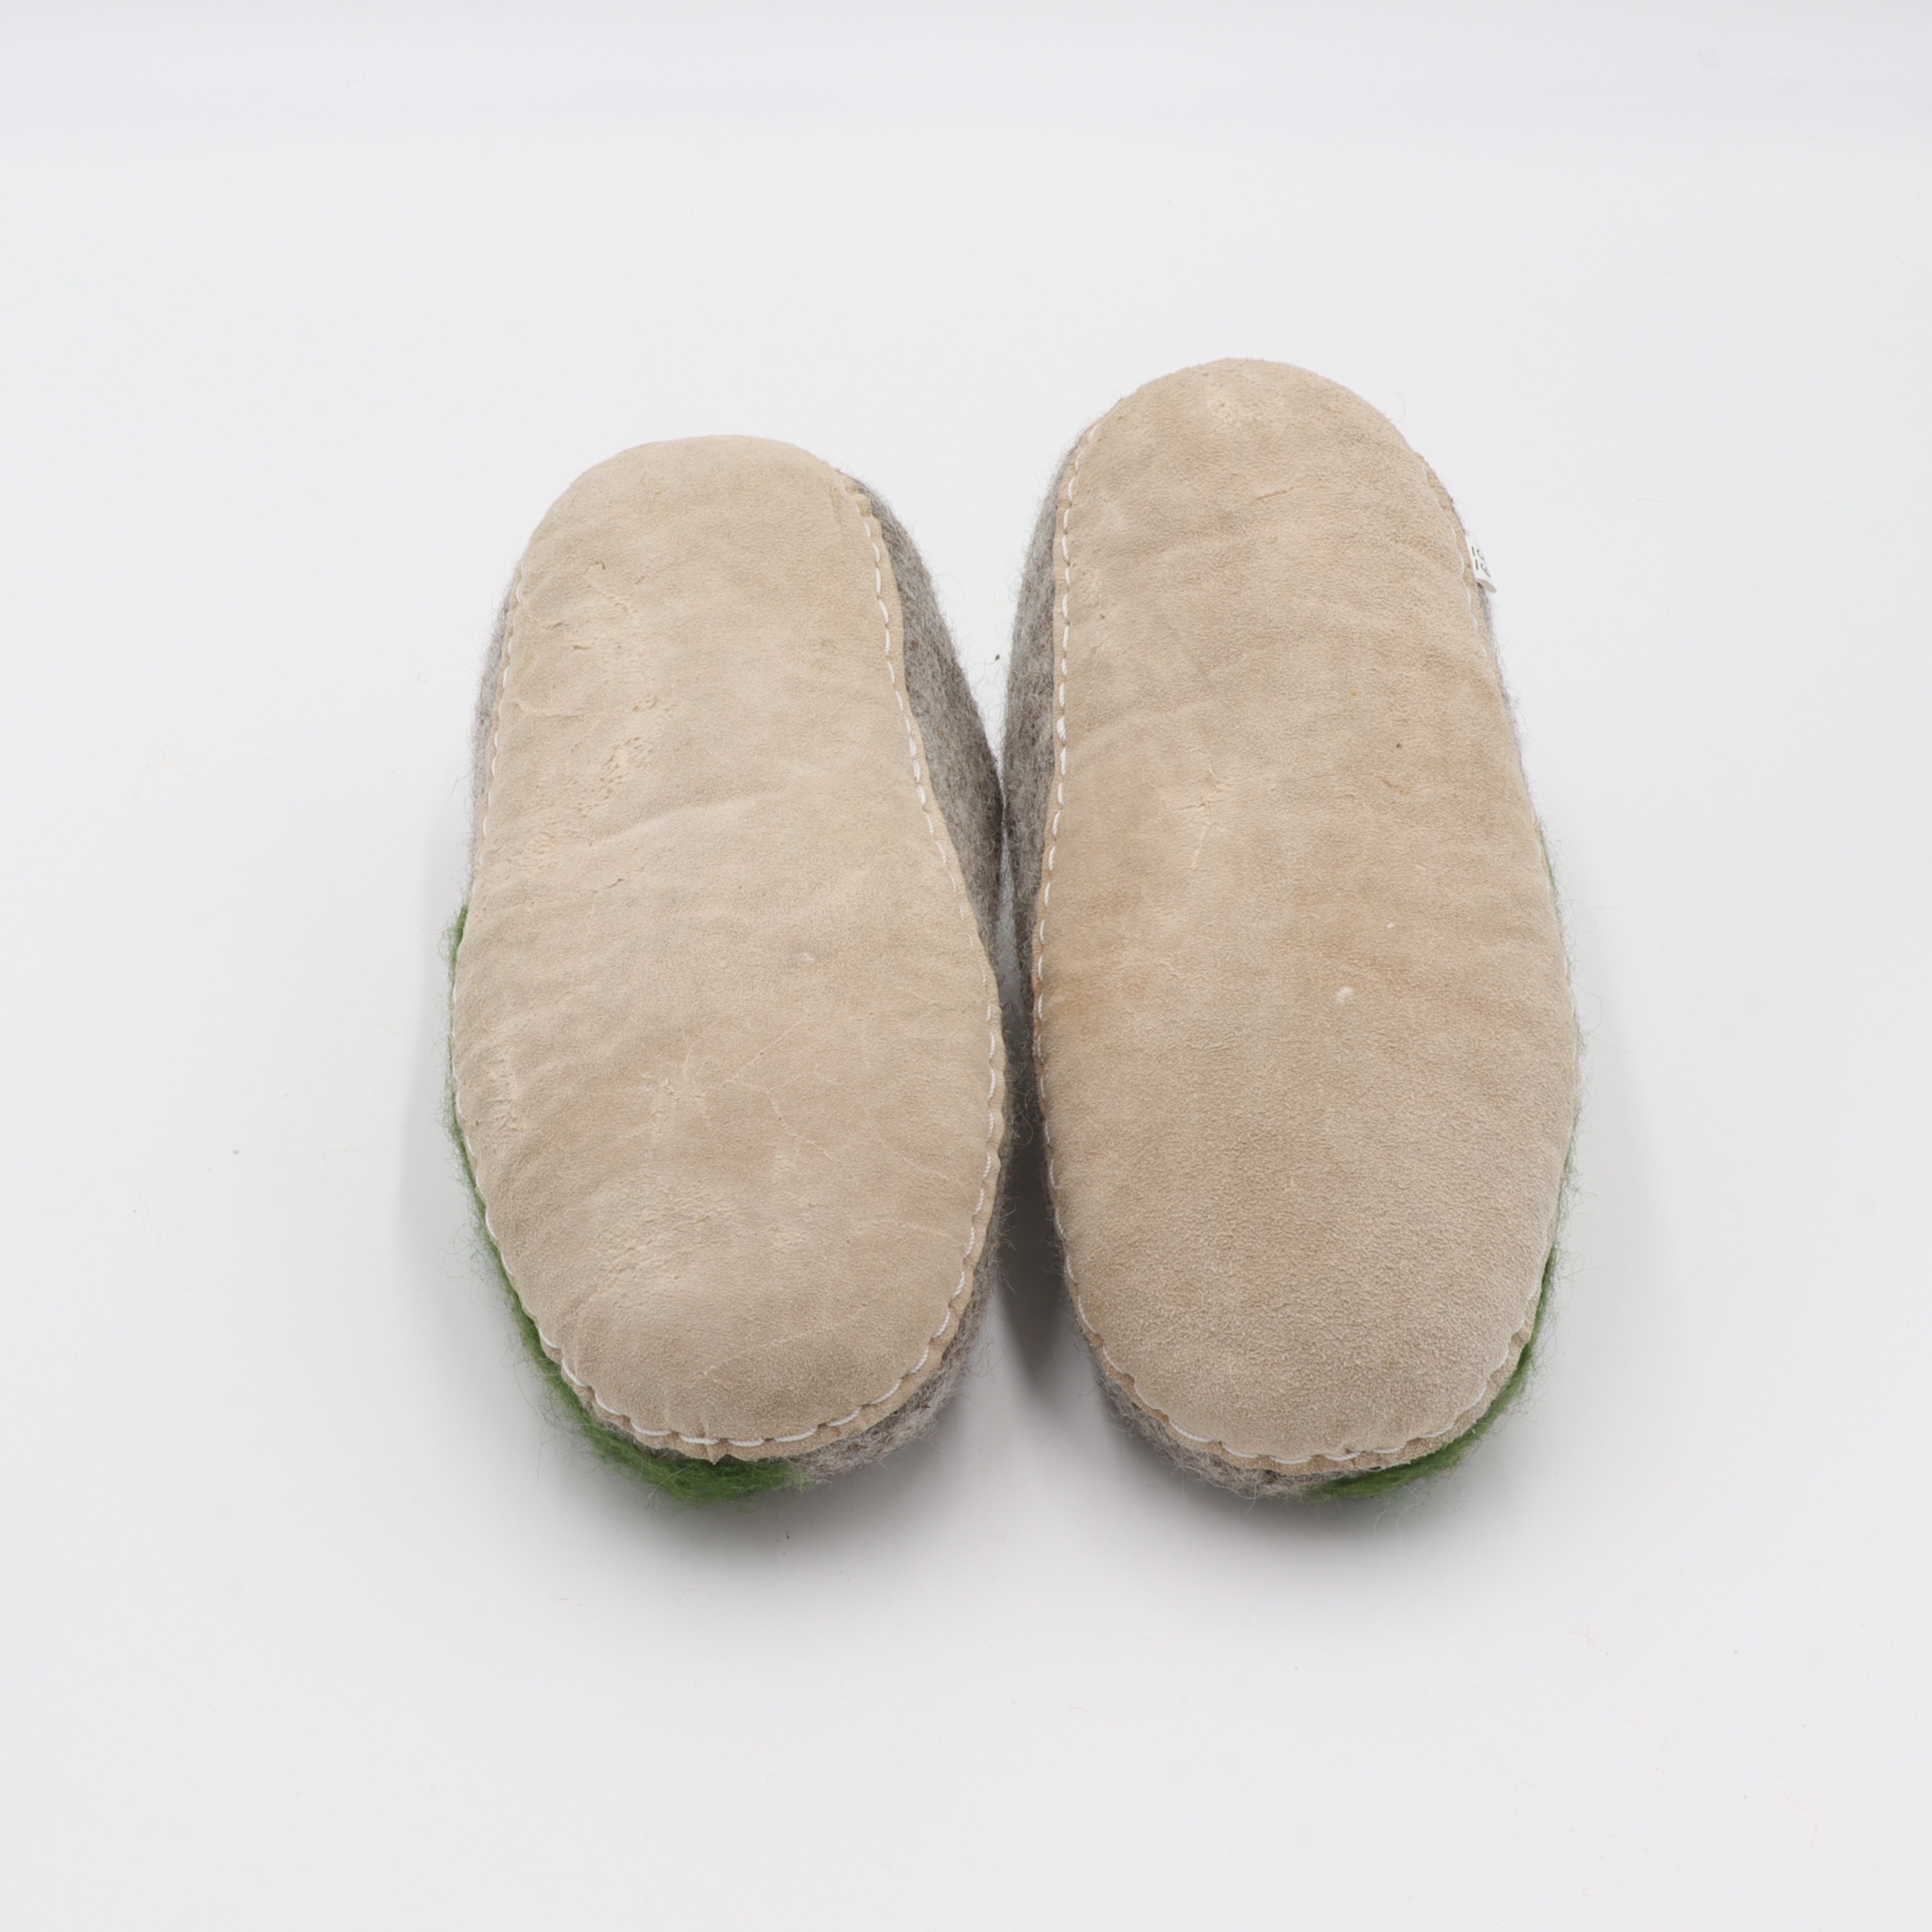 Schuhe aus Filz für Erwachsene - Die Fliegenpilz Wiese - rutschfeste Sohle aus Wildleder